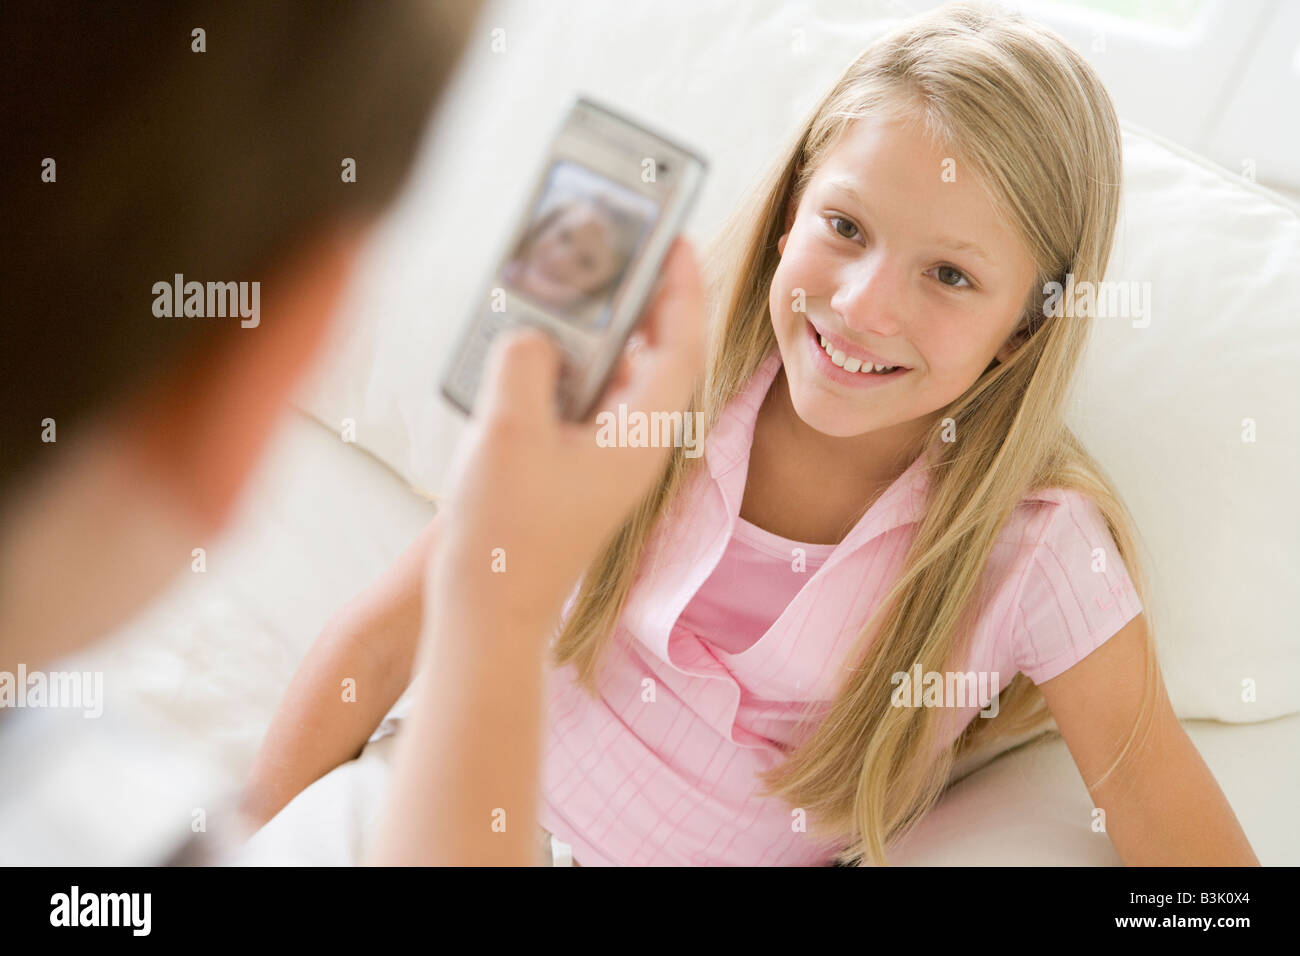 Kleiner Junge unter Bild lächelnden jungen Mädchens mit Kamera-Handy im Innenbereich Stockfoto